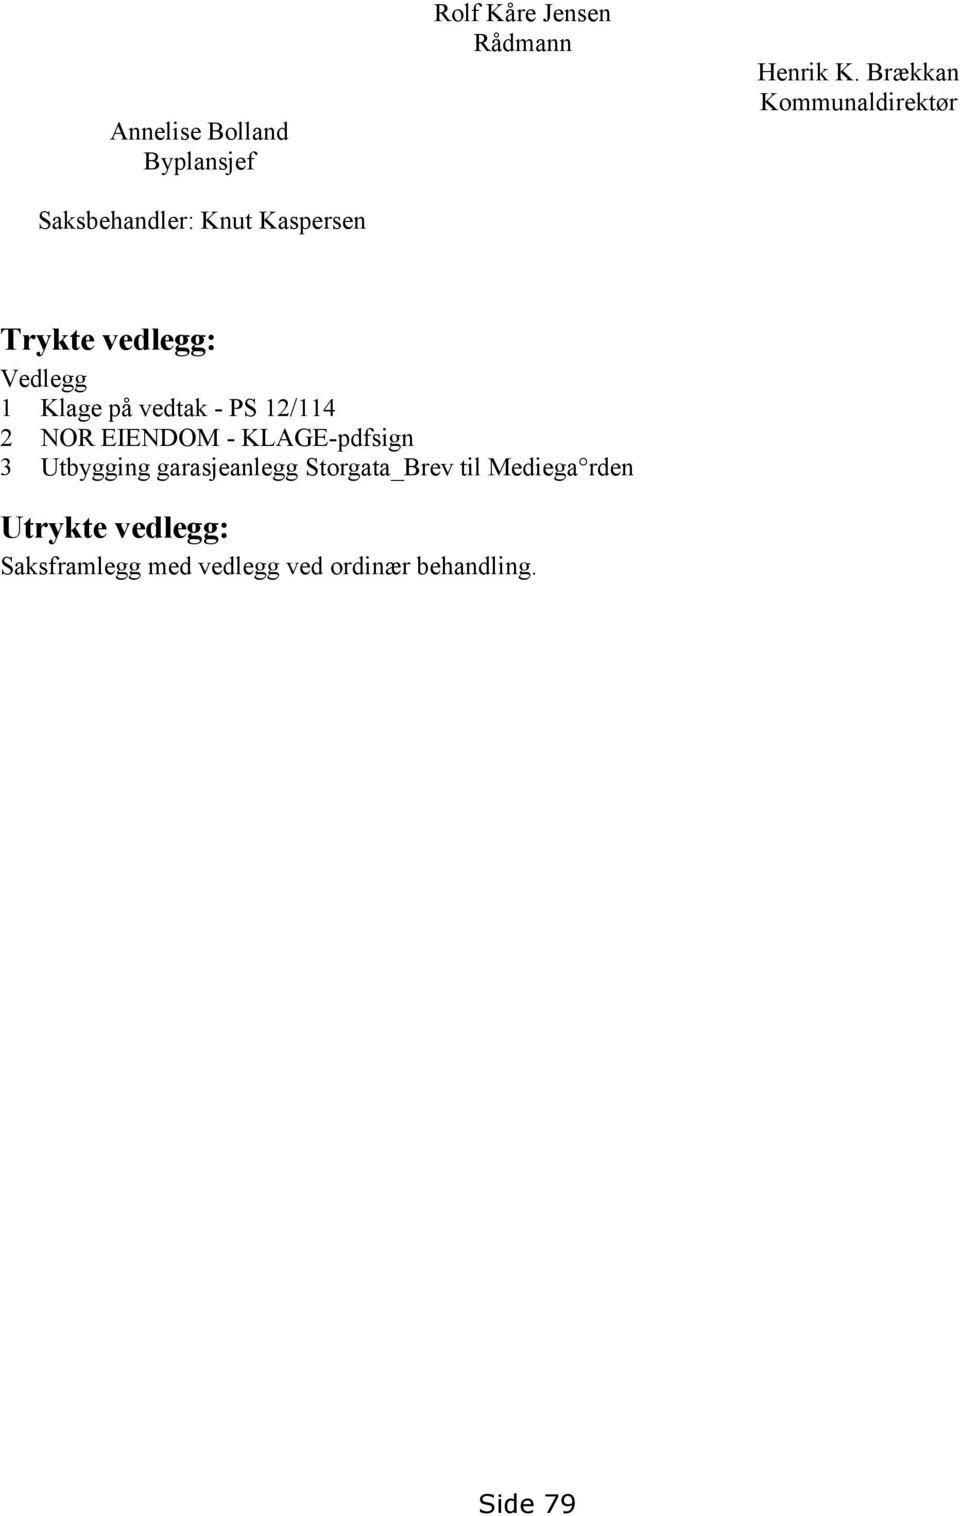 Brækkan Kommunaldirektør Trykte vedlegg: Vedlegg 1 Klage på vedtak - PS 12/114 2